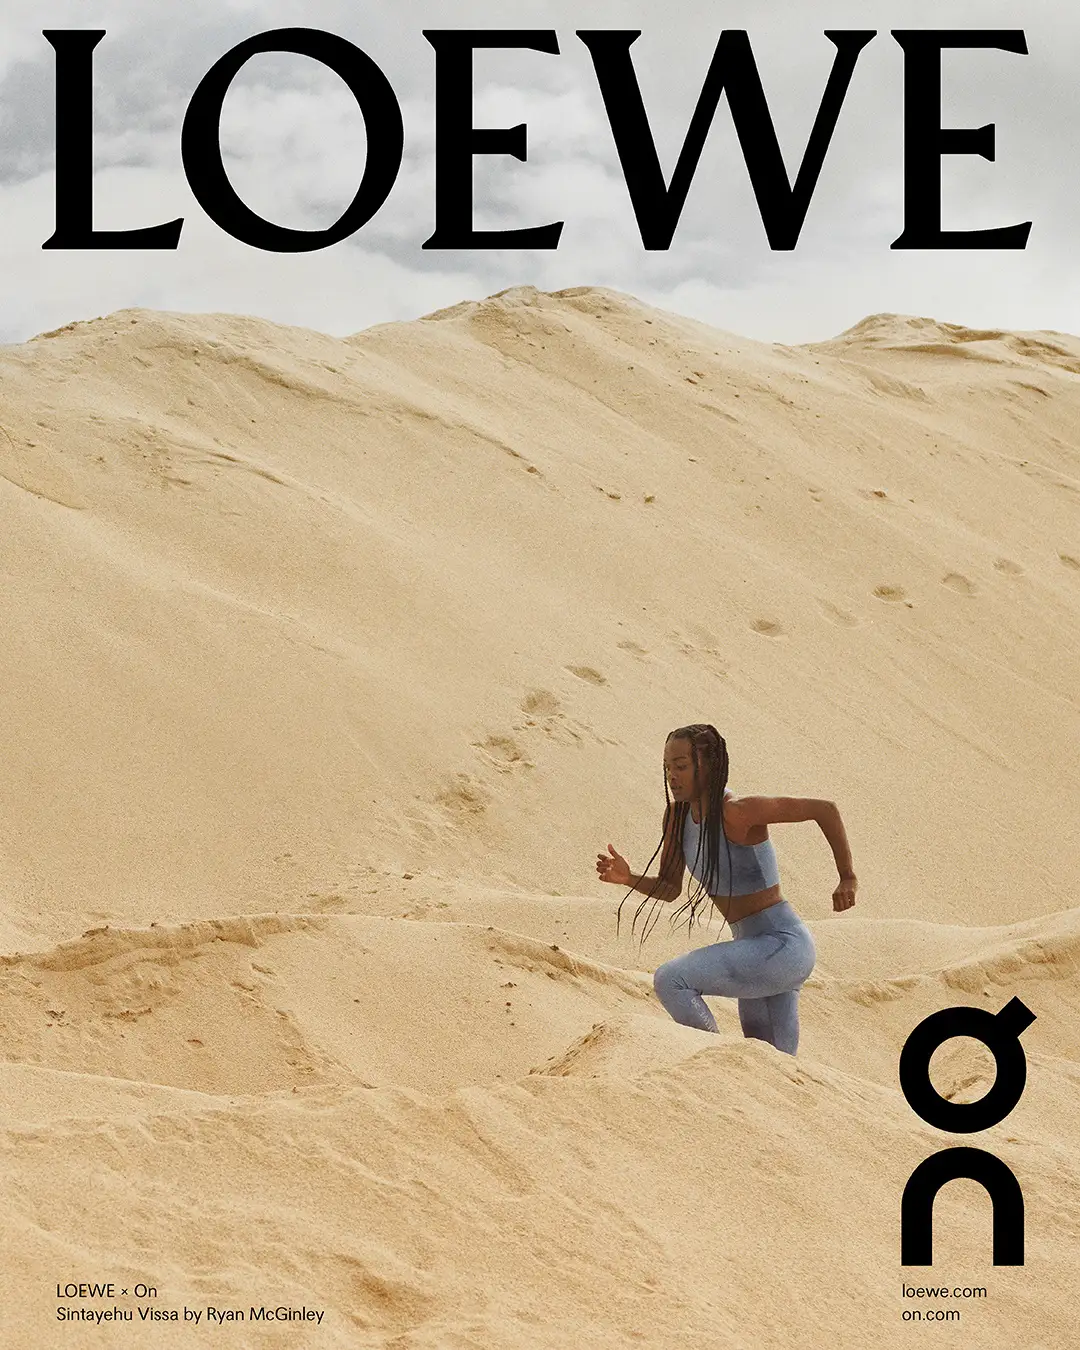 LOEWE × On による新作コラボの公式販売情報が発表